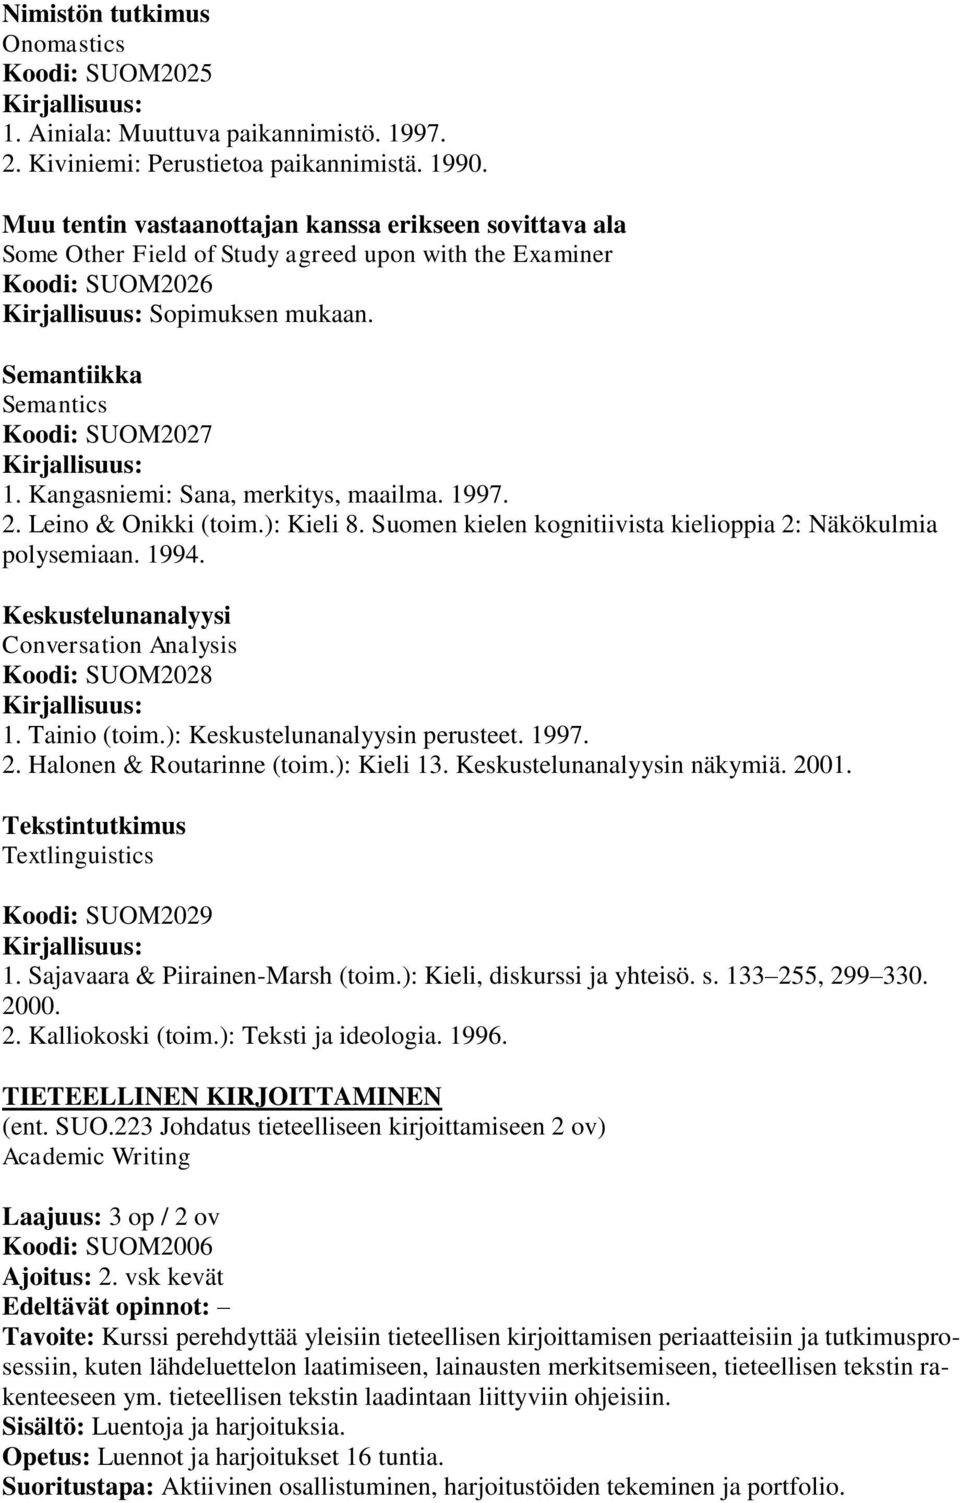 Kangasniemi: Sana, merkitys, maailma. 1997. 2. Leino & Onikki (toim.): Kieli 8. Suomen kielen kognitiivista kielioppia 2: Näkökulmia polysemiaan. 1994.